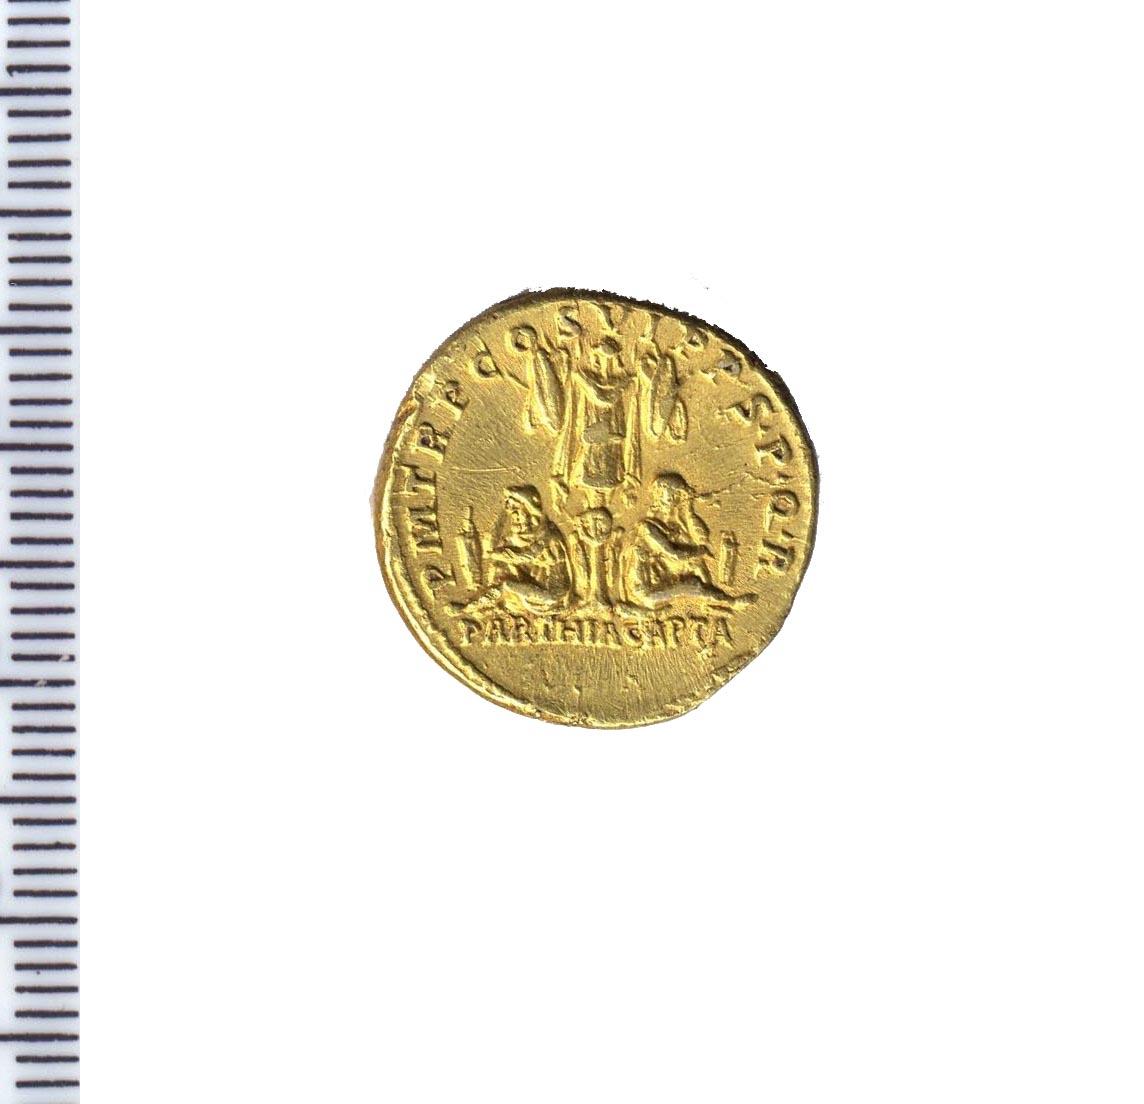 moneta - aureo - produzione romana imperiale (sec. II d.C)